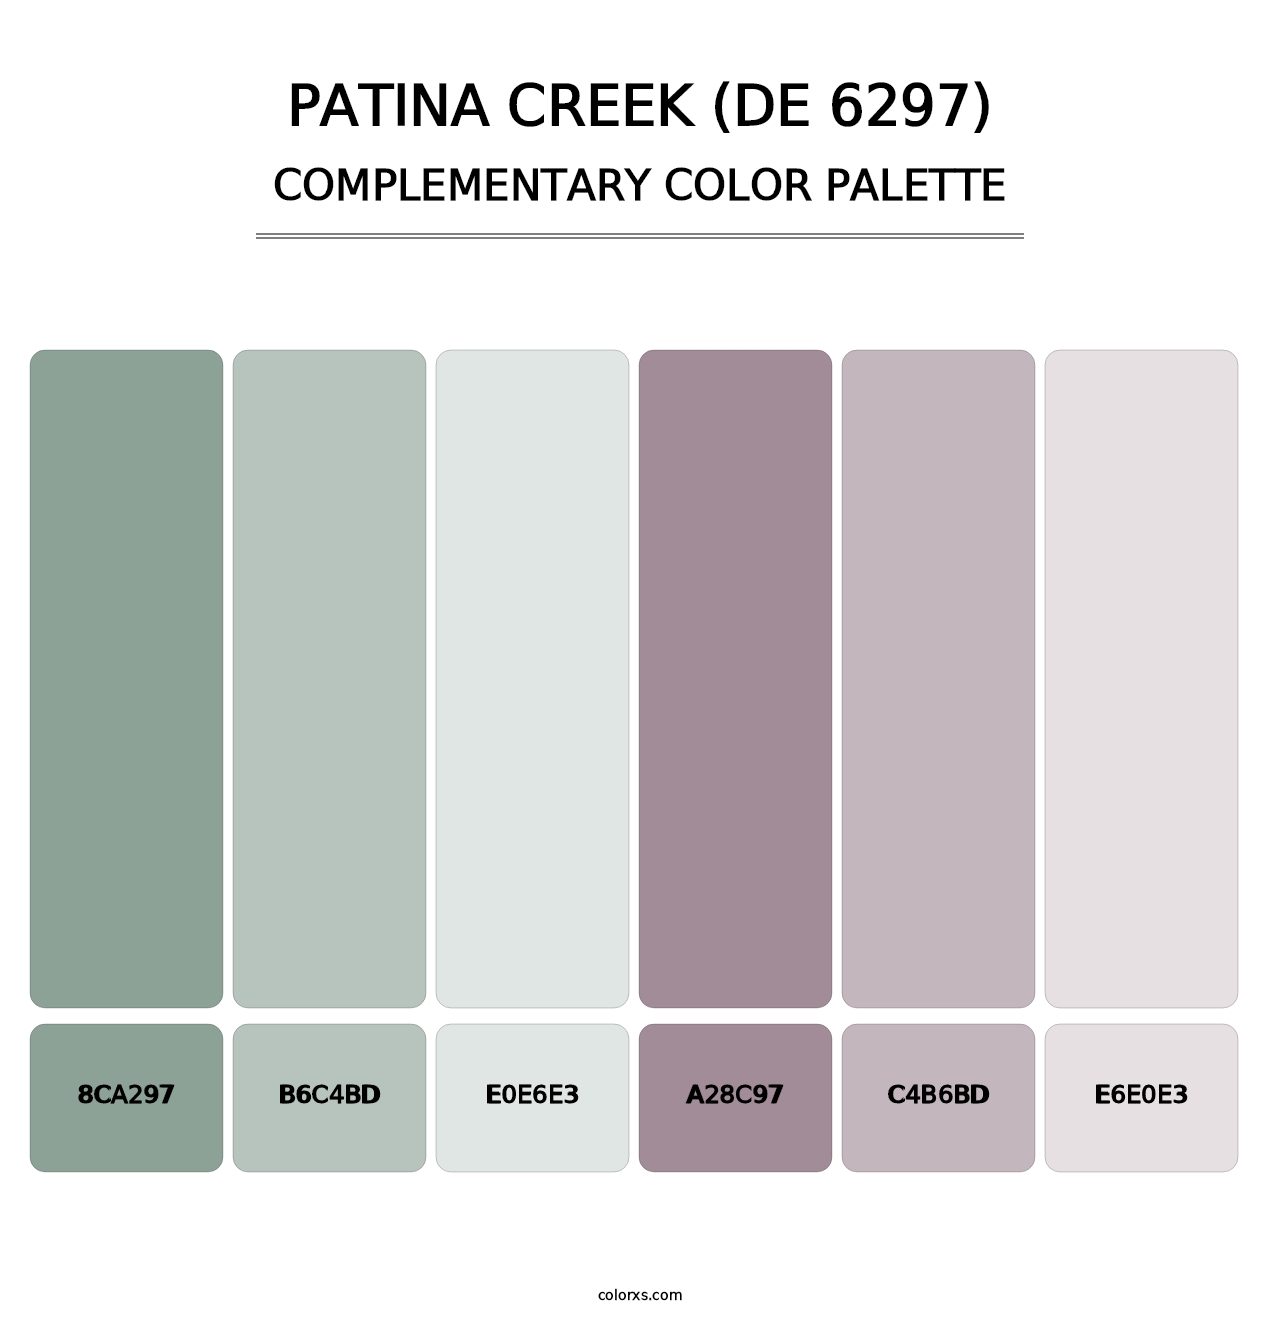 Patina Creek (DE 6297) - Complementary Color Palette